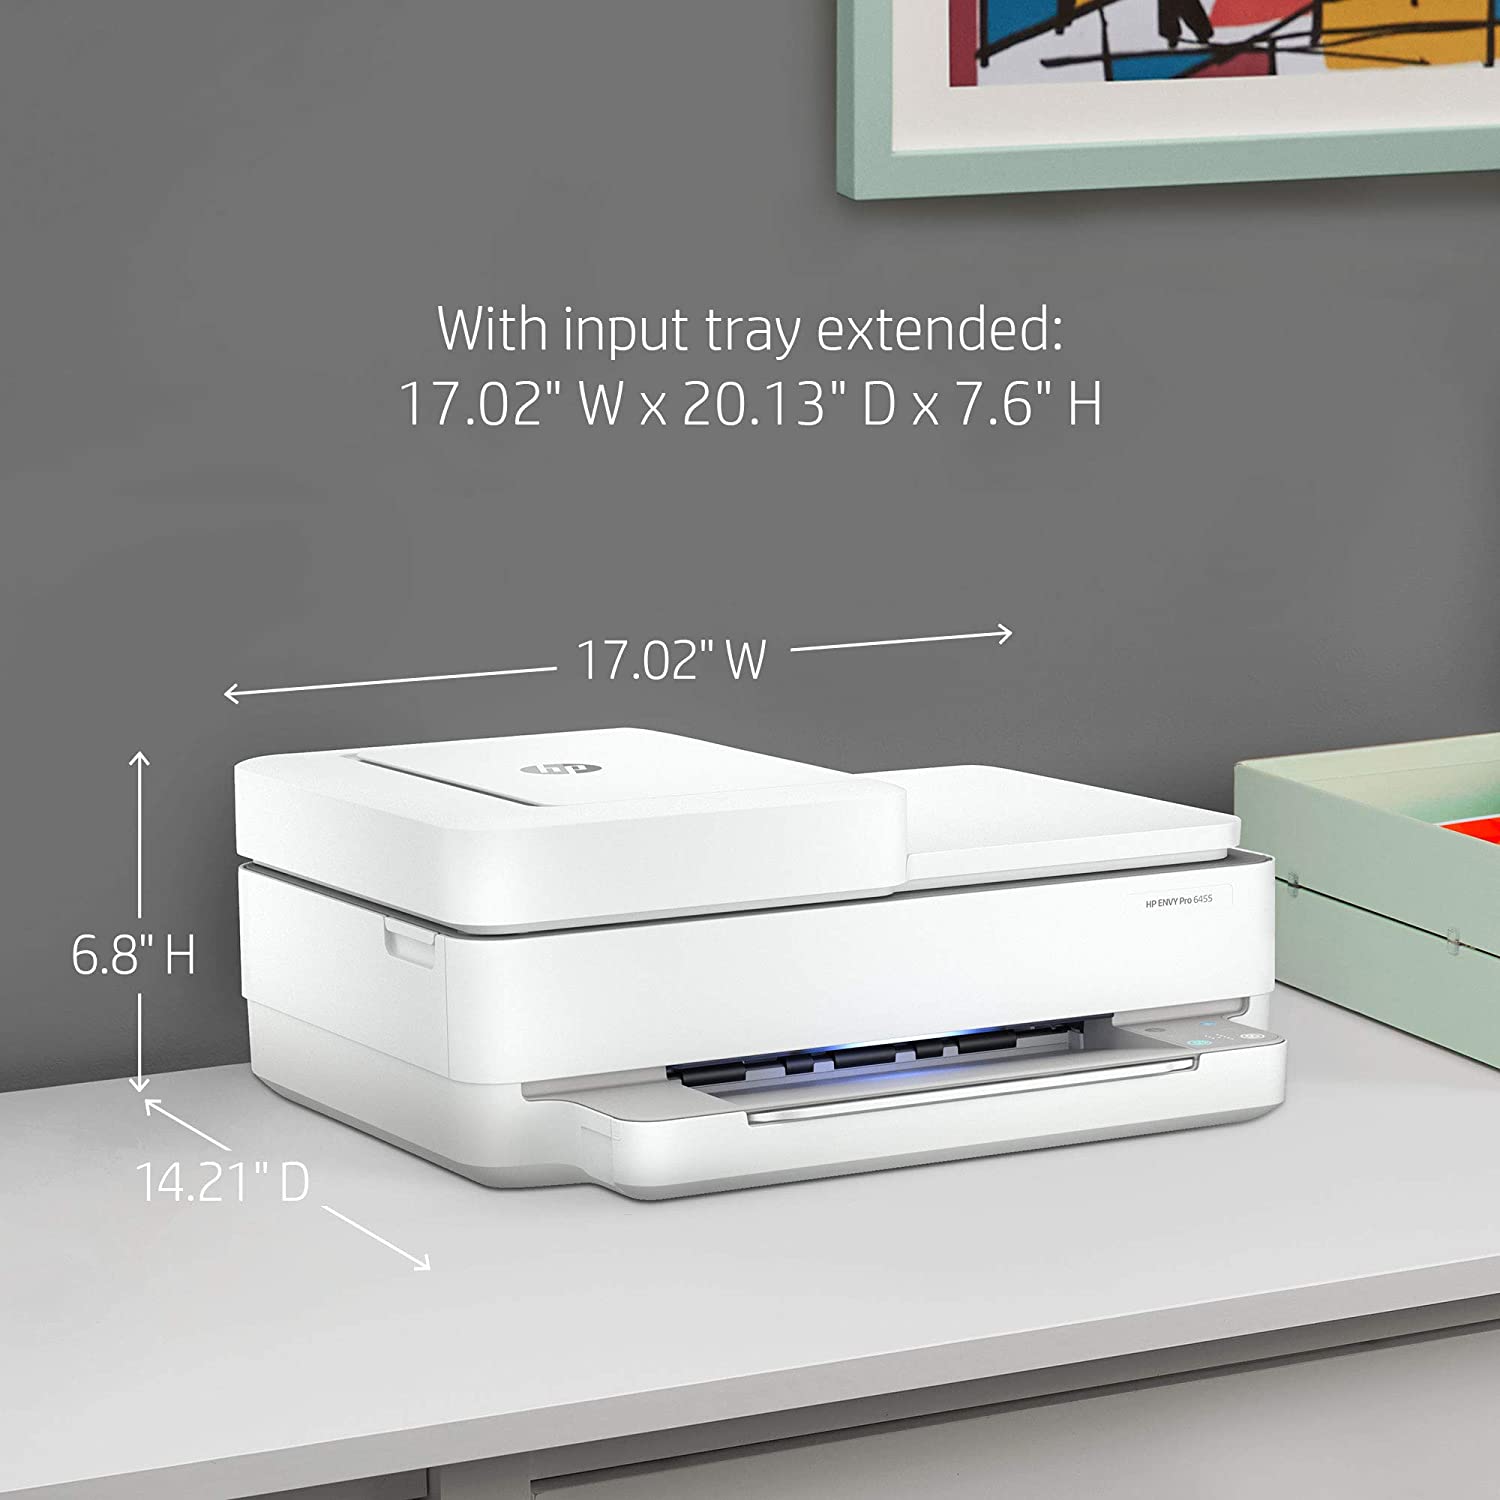 HP Envy Pro 6455多合一打印机评测(6)